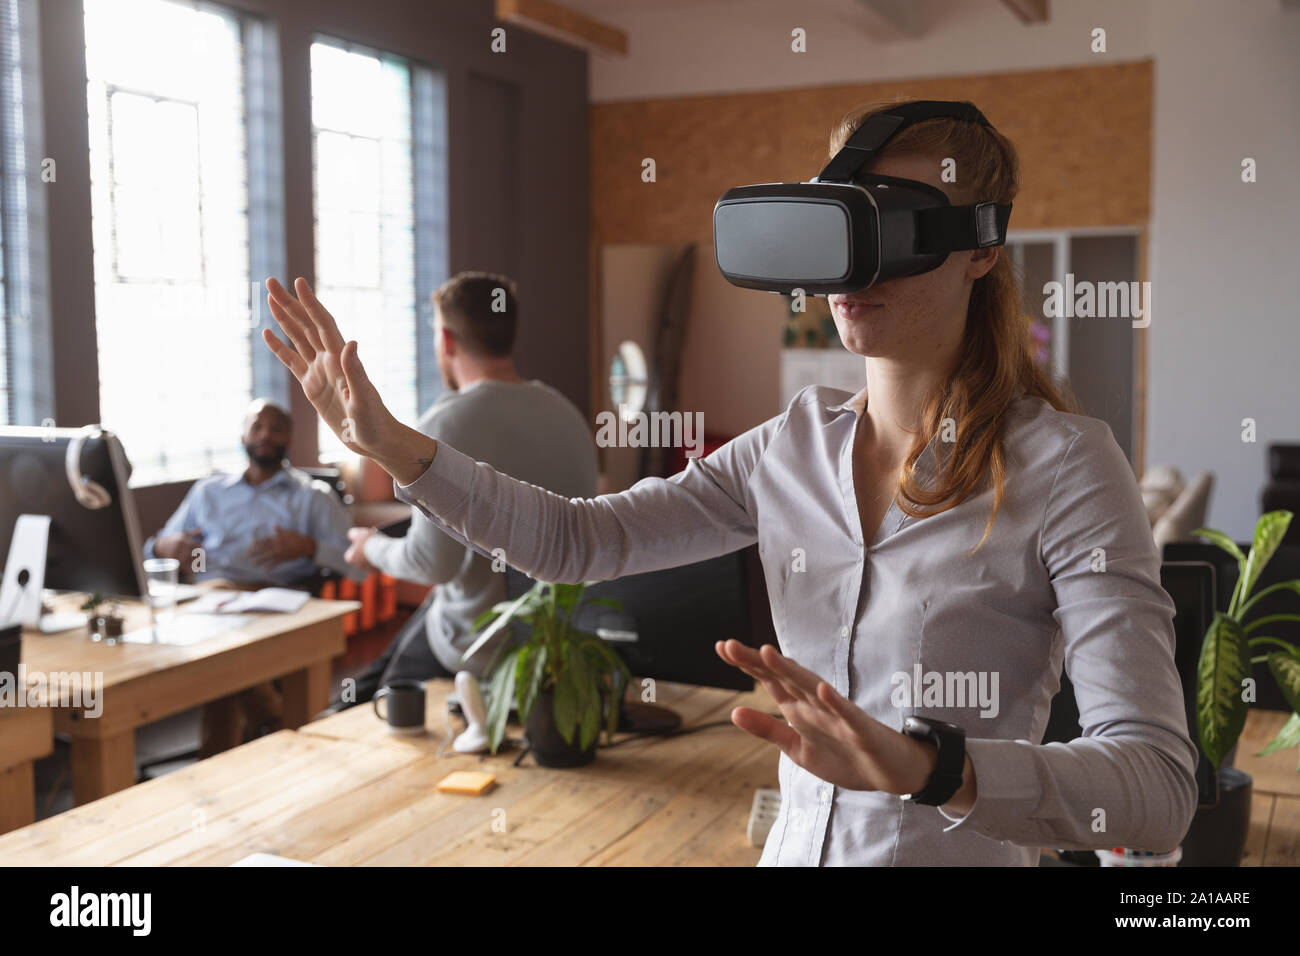 Young Creative Professional Frau mit VR-Headset in einem sonnendurchfluteten Büro Stockfoto